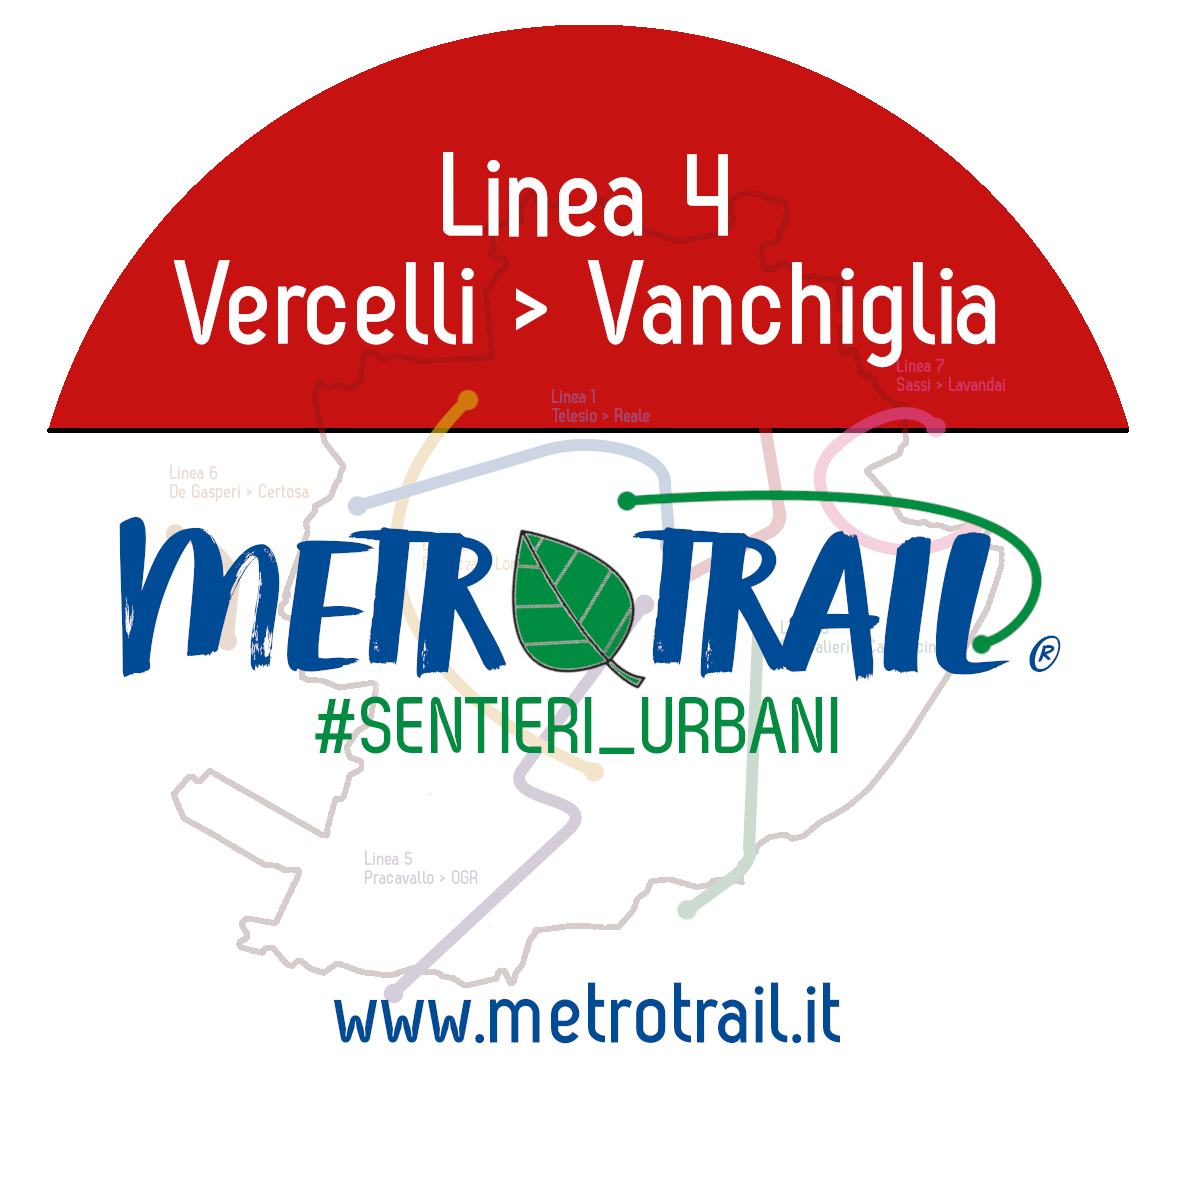 Camminata MetroTrail, Linea 4: da Corso Vercelli a Borgo Vanchiglia